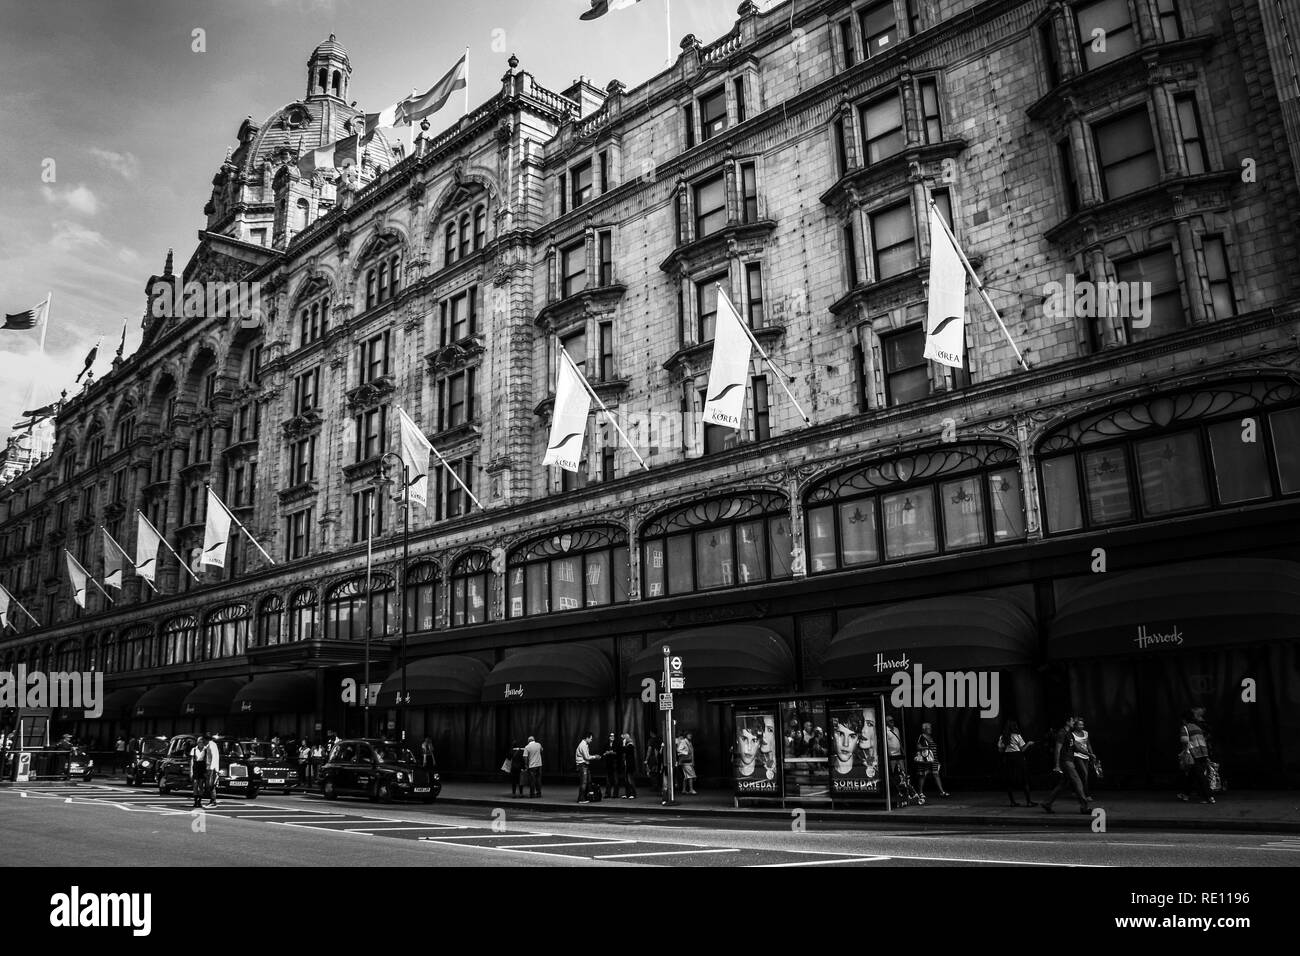 Vecchia fotografia in bianco e nero dei magazzini Harrods a Londra, Regno Unito Foto Stock